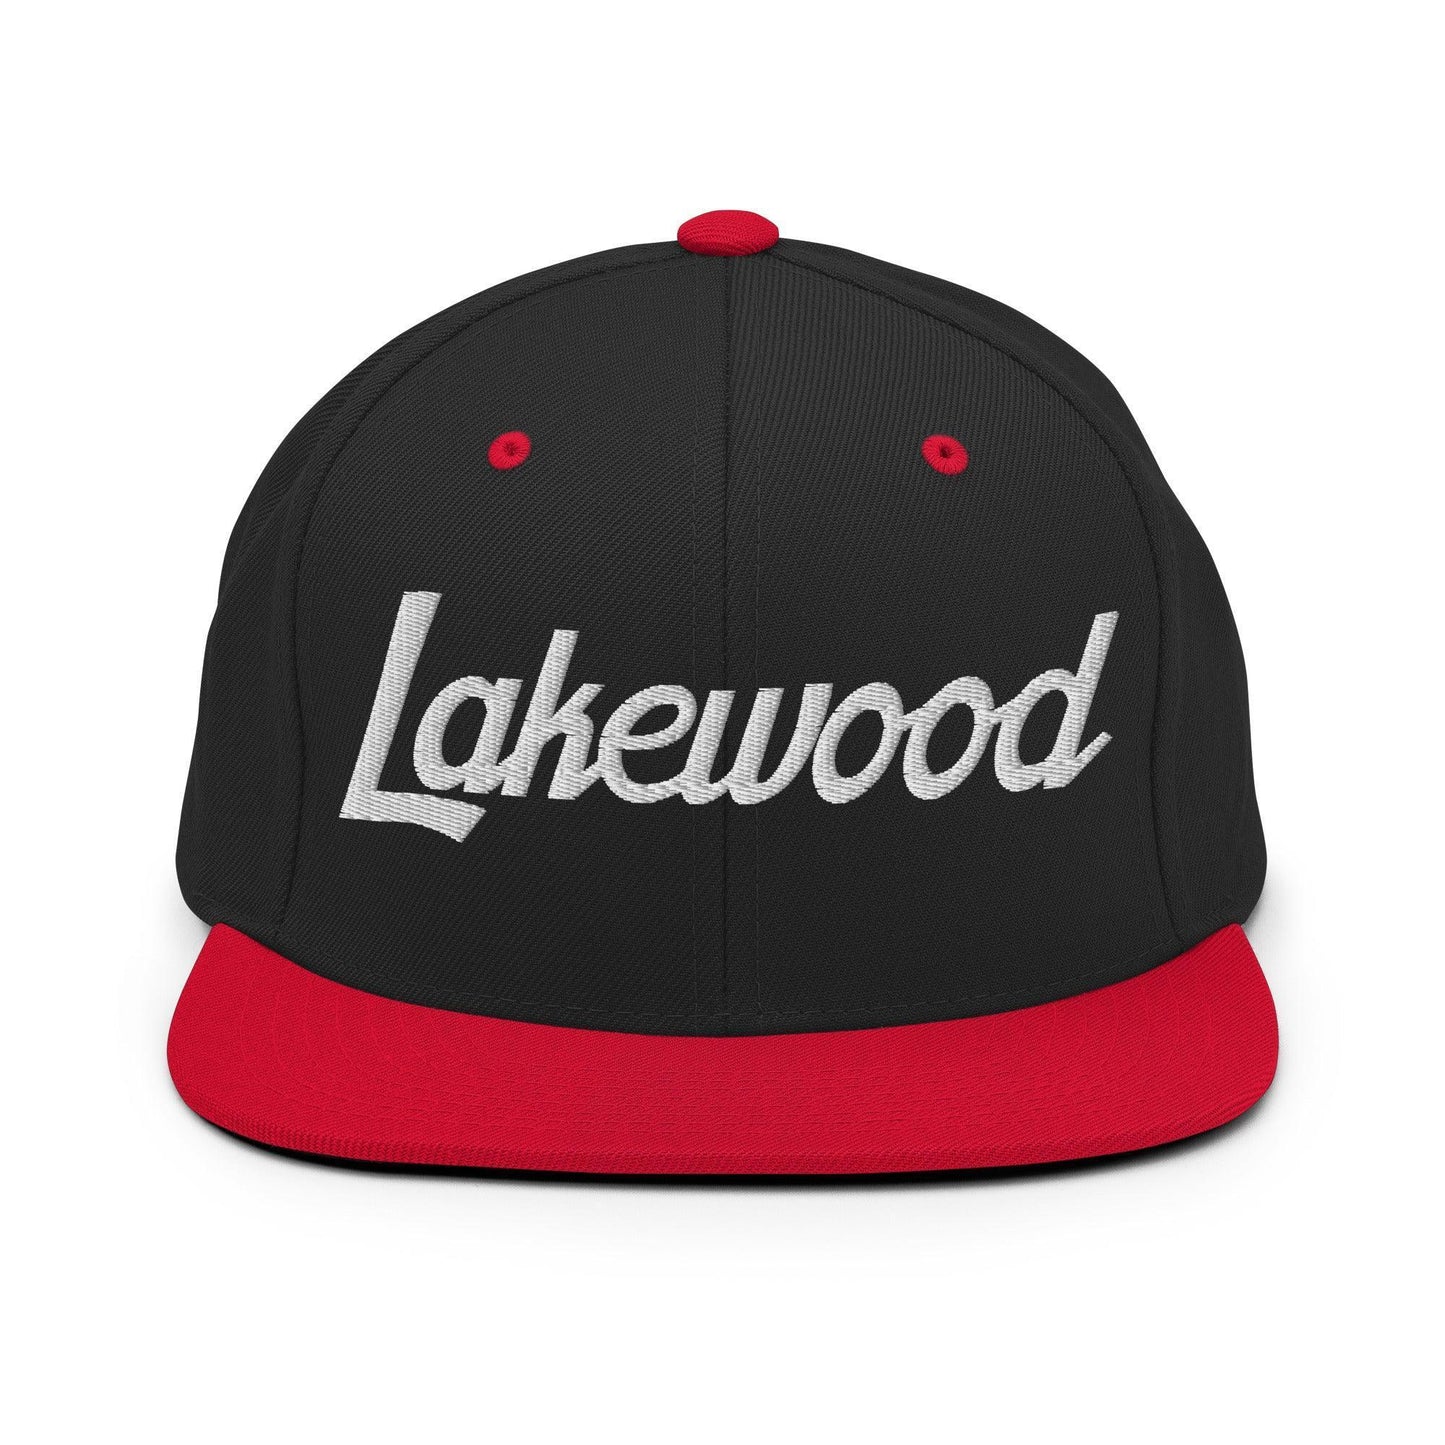 Lakewood Script Snapback Hat Black Red